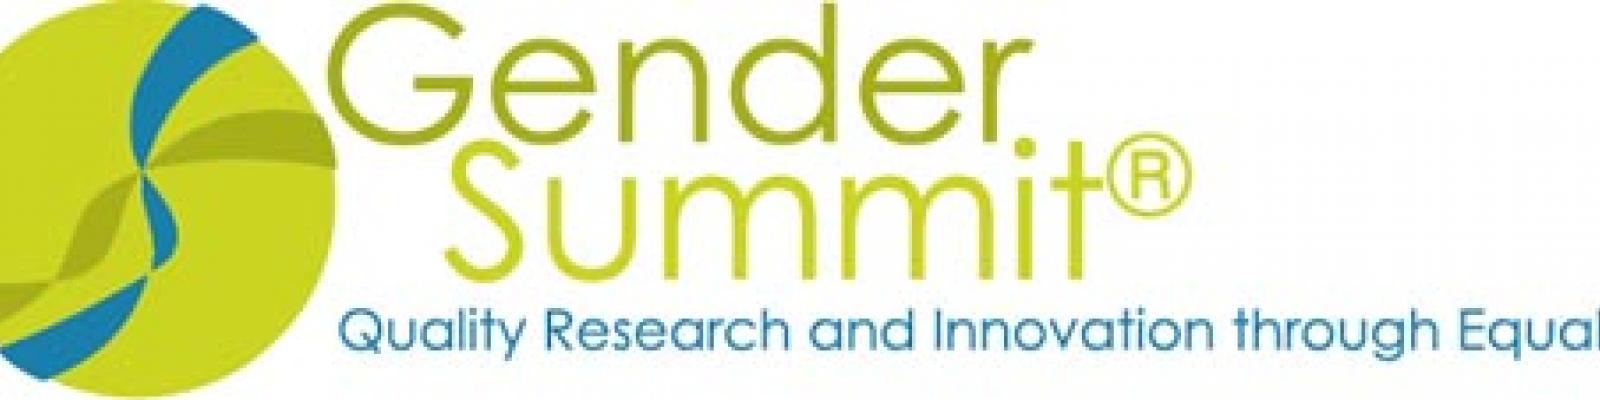 Gender Summit Logo